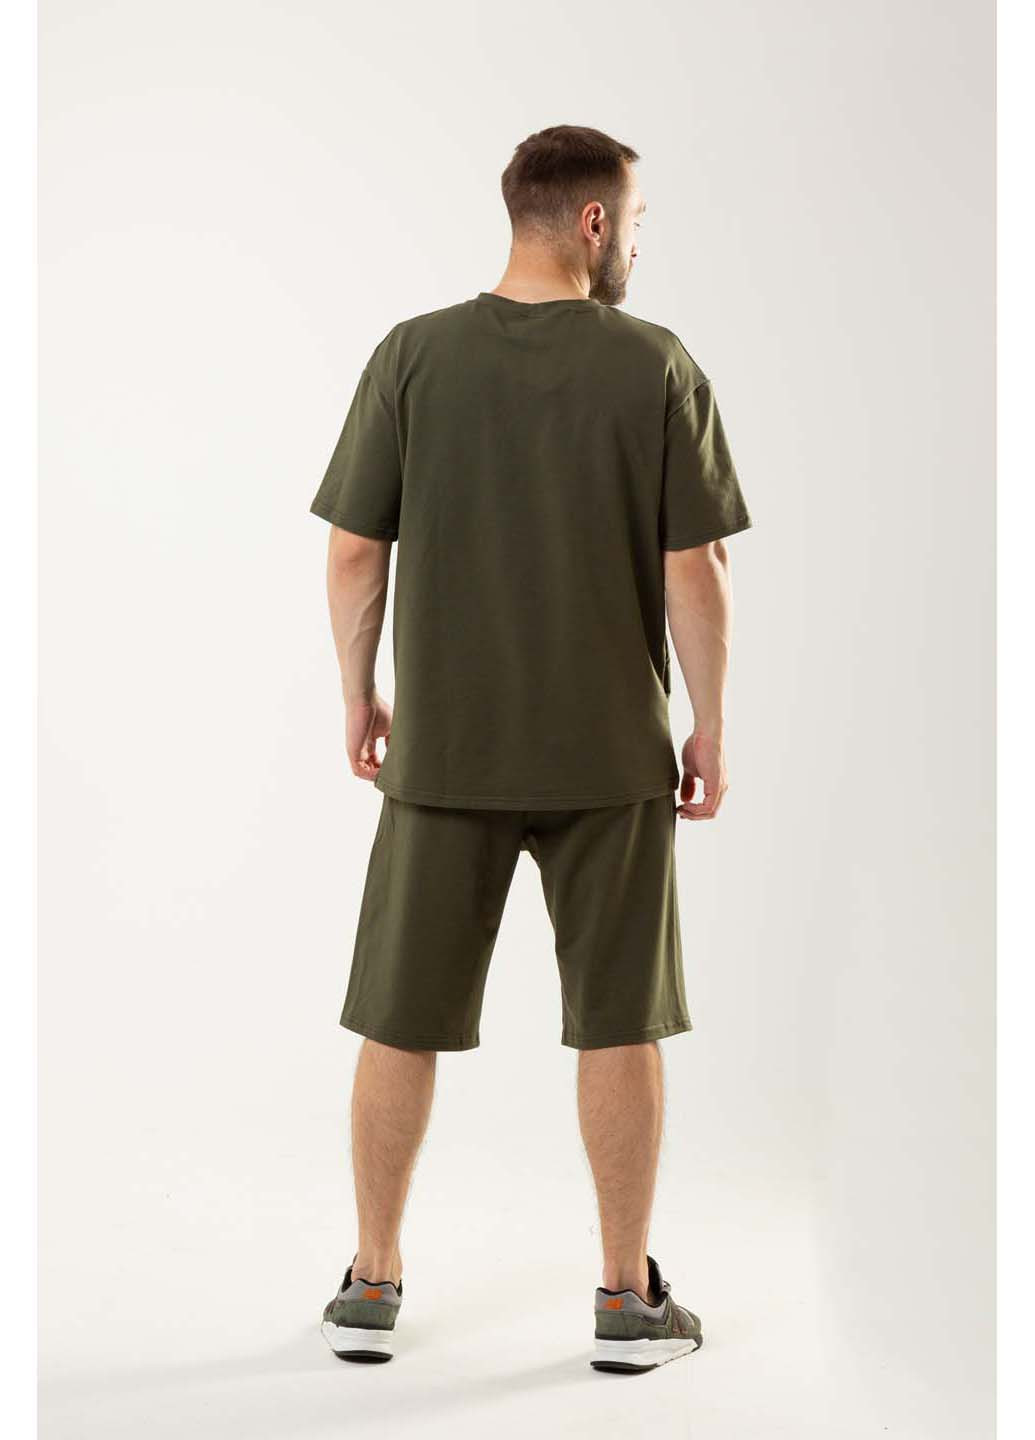 Оливковый (хаки) демисезонный комплект (футболка, шорты) Intruder